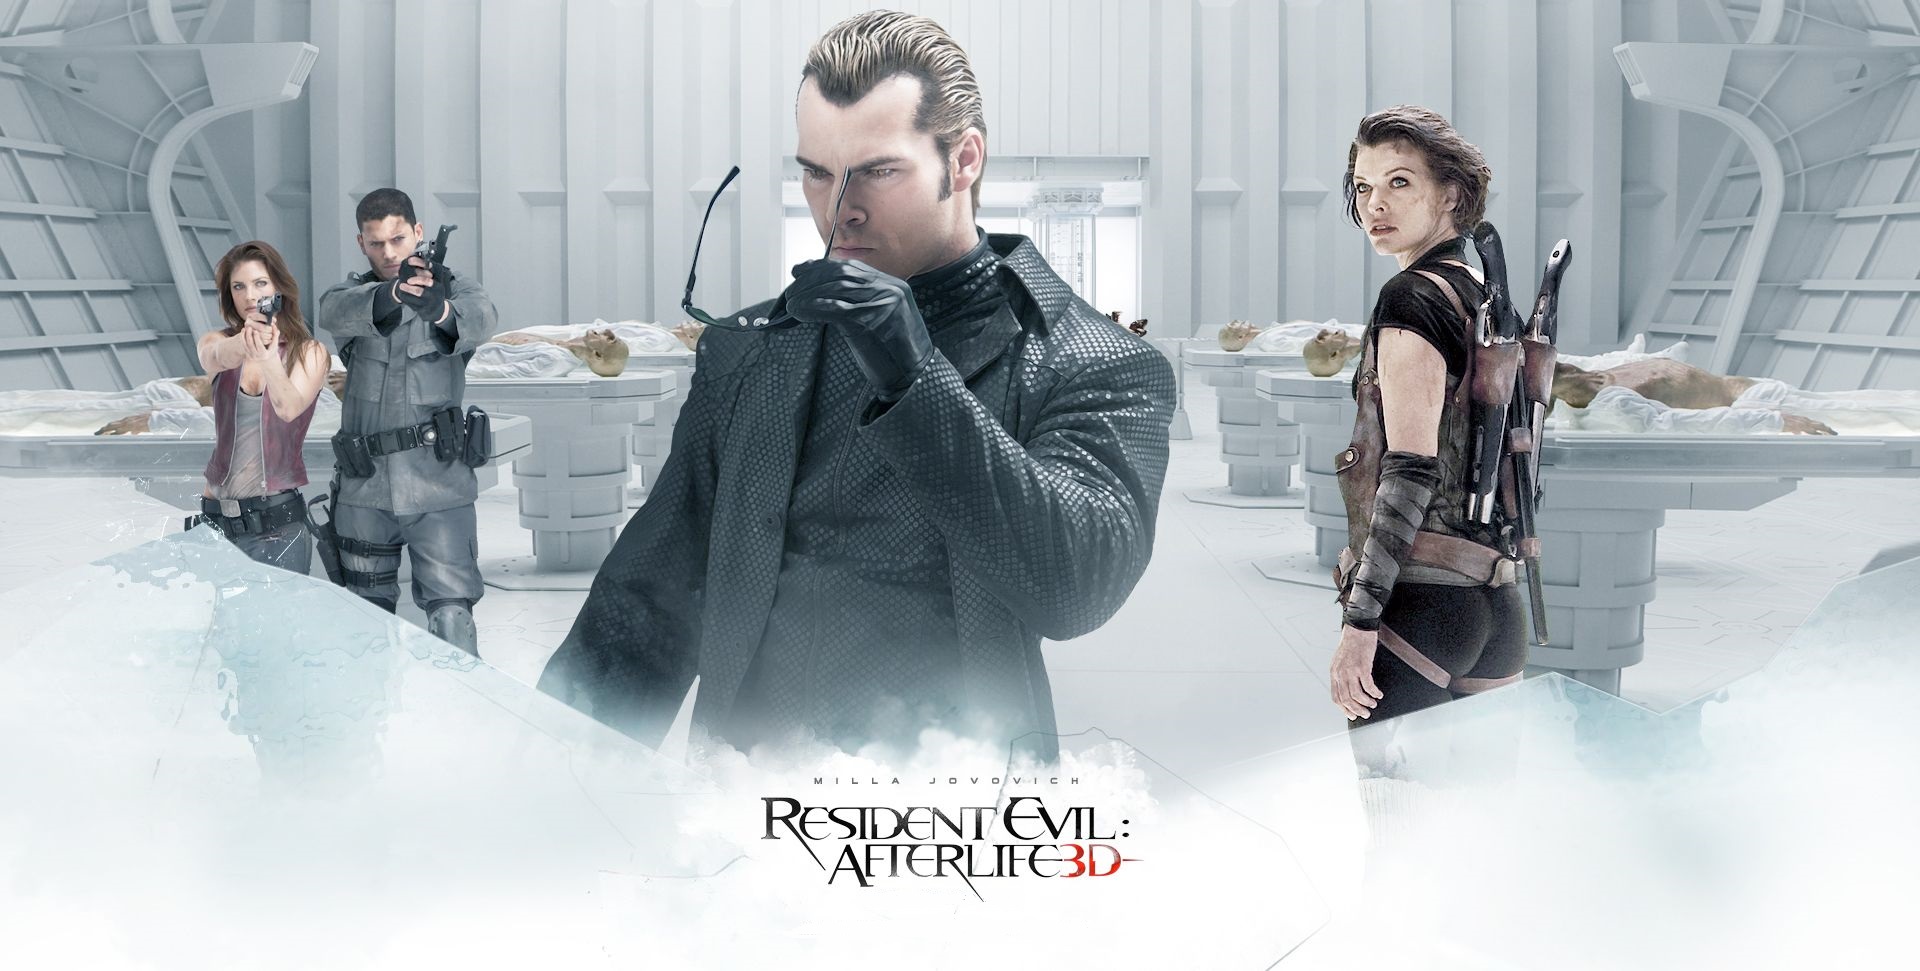 Modelo confirma que foi a inspiração para a nova Ashley em Resident Evil 4  Remake - EvilHazard